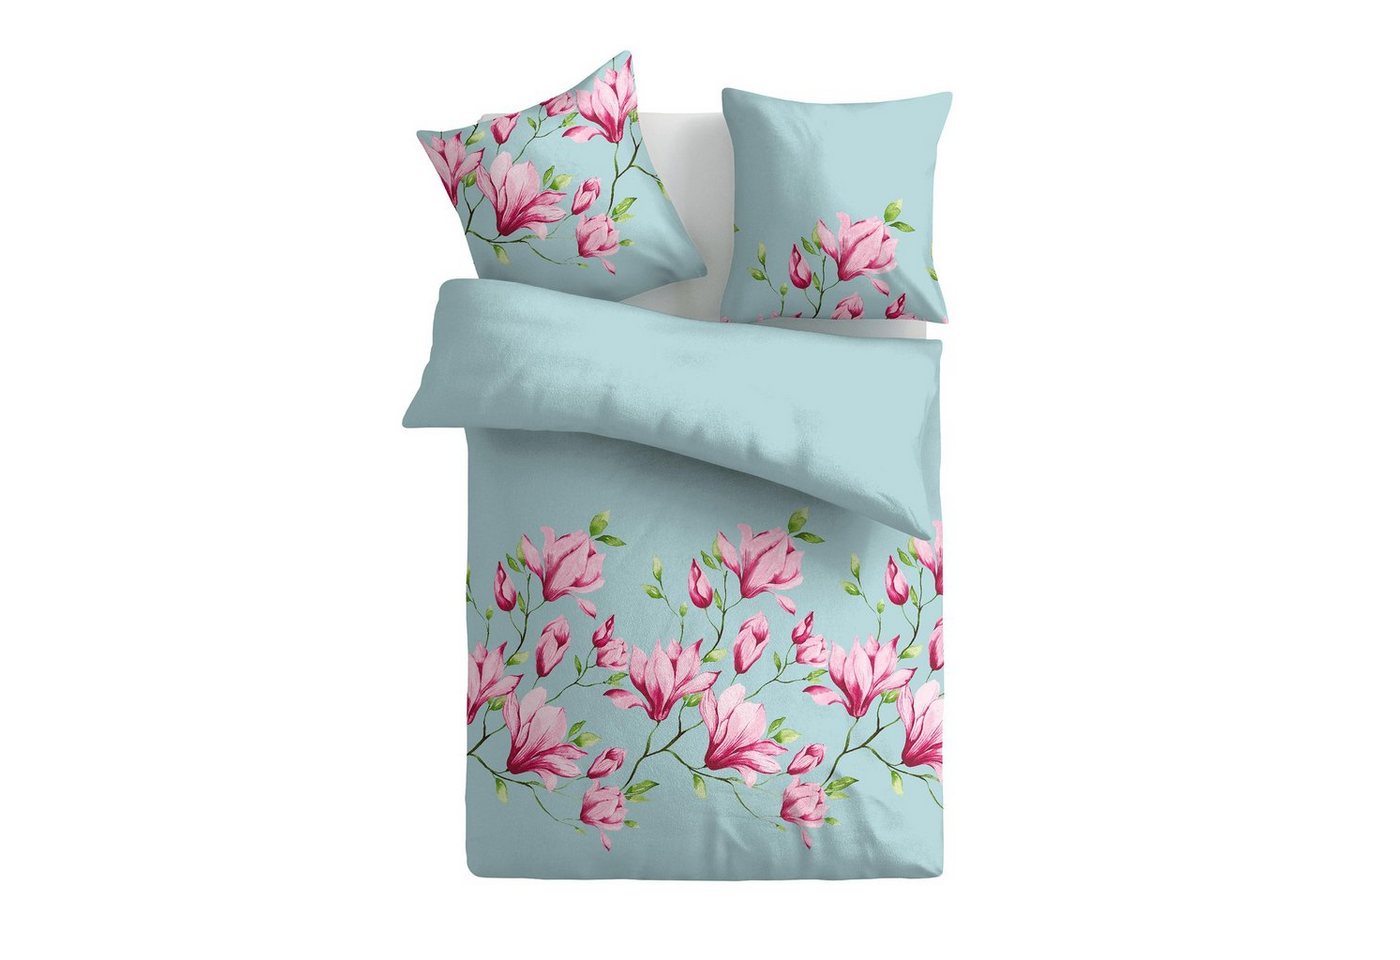 Bettwäsche 2tlg. Bettbezug + Kissenbezug - Floral / Ornament, Bestlivings, Satin Baumwolle, 100% Baumwolle, verd. Reißverschluss, Satin Qualität - Bettdeckenbezug von Bestlivings